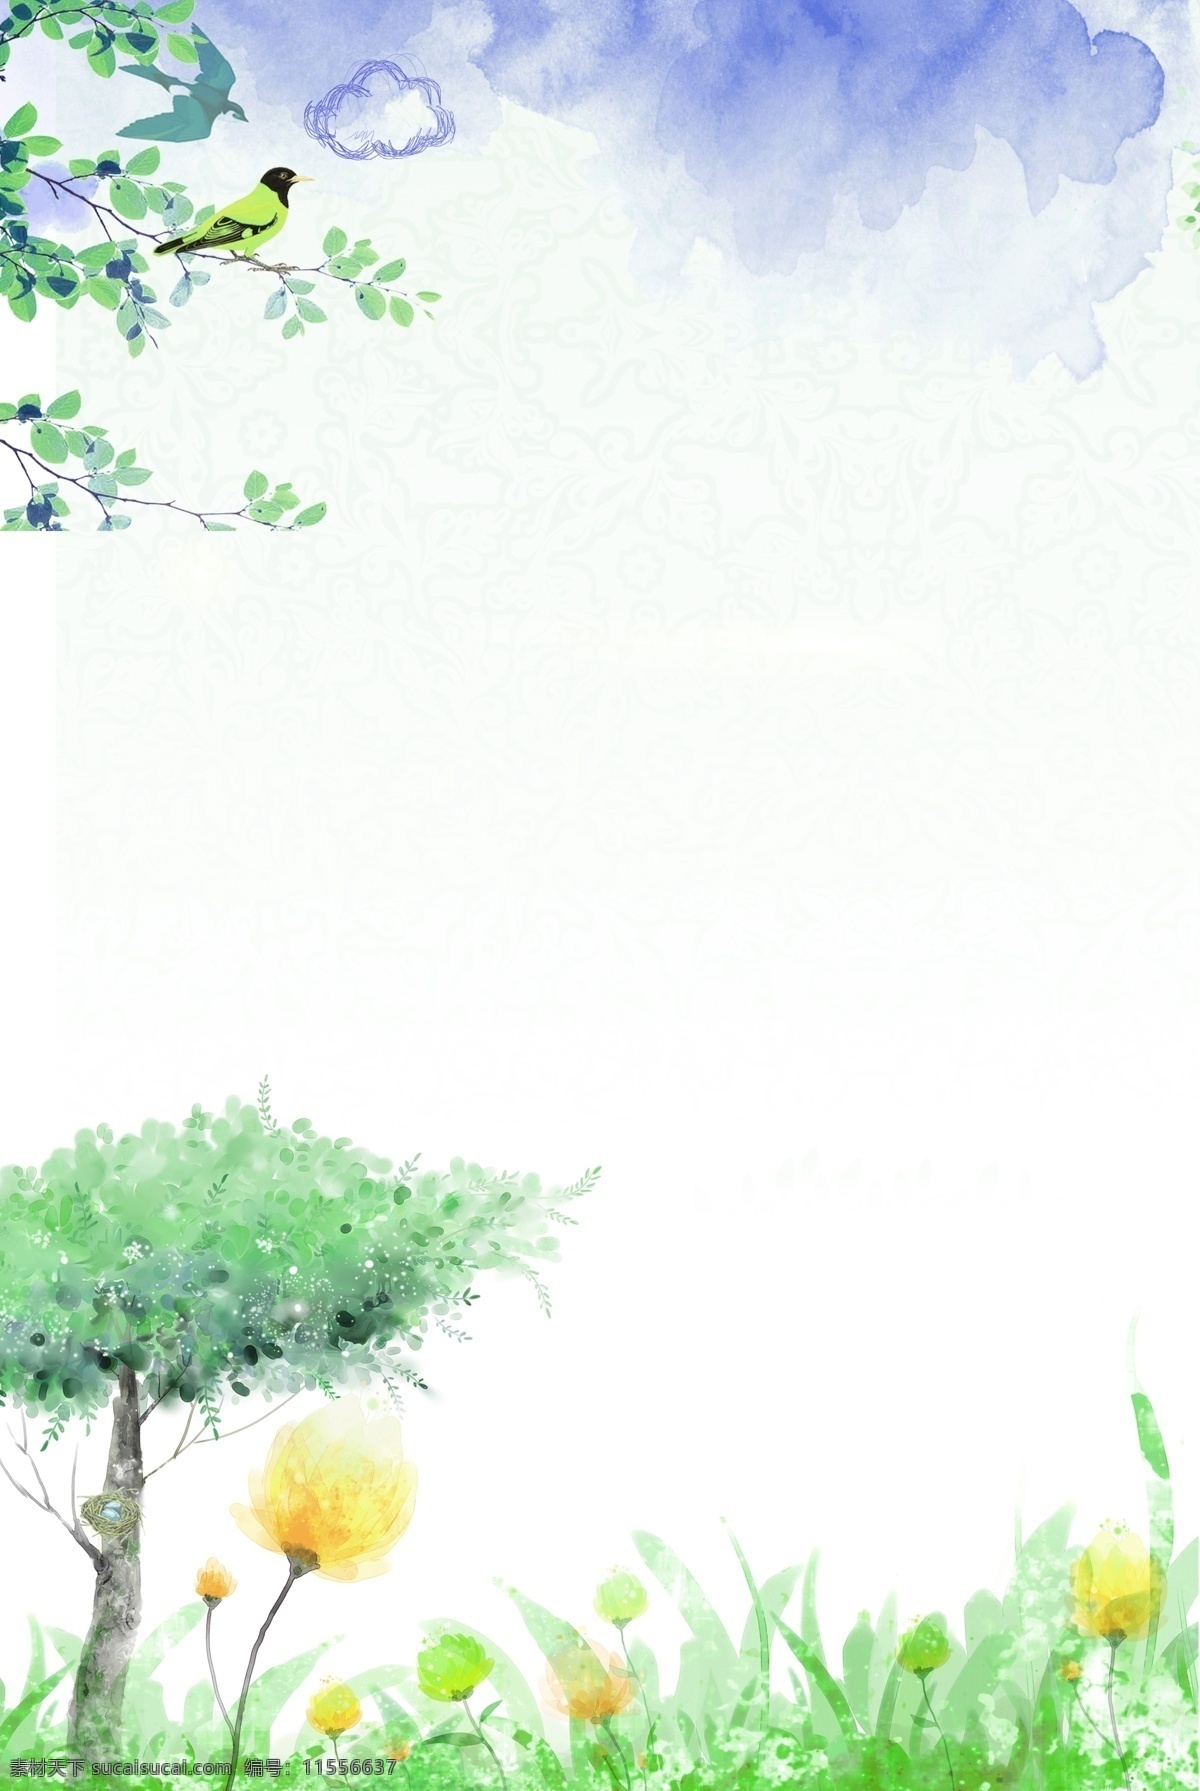 中国 风 清明 踏青 边框 背景 扫墓 清明节 春天 郊游 雨水 露水 花 河 雨 树